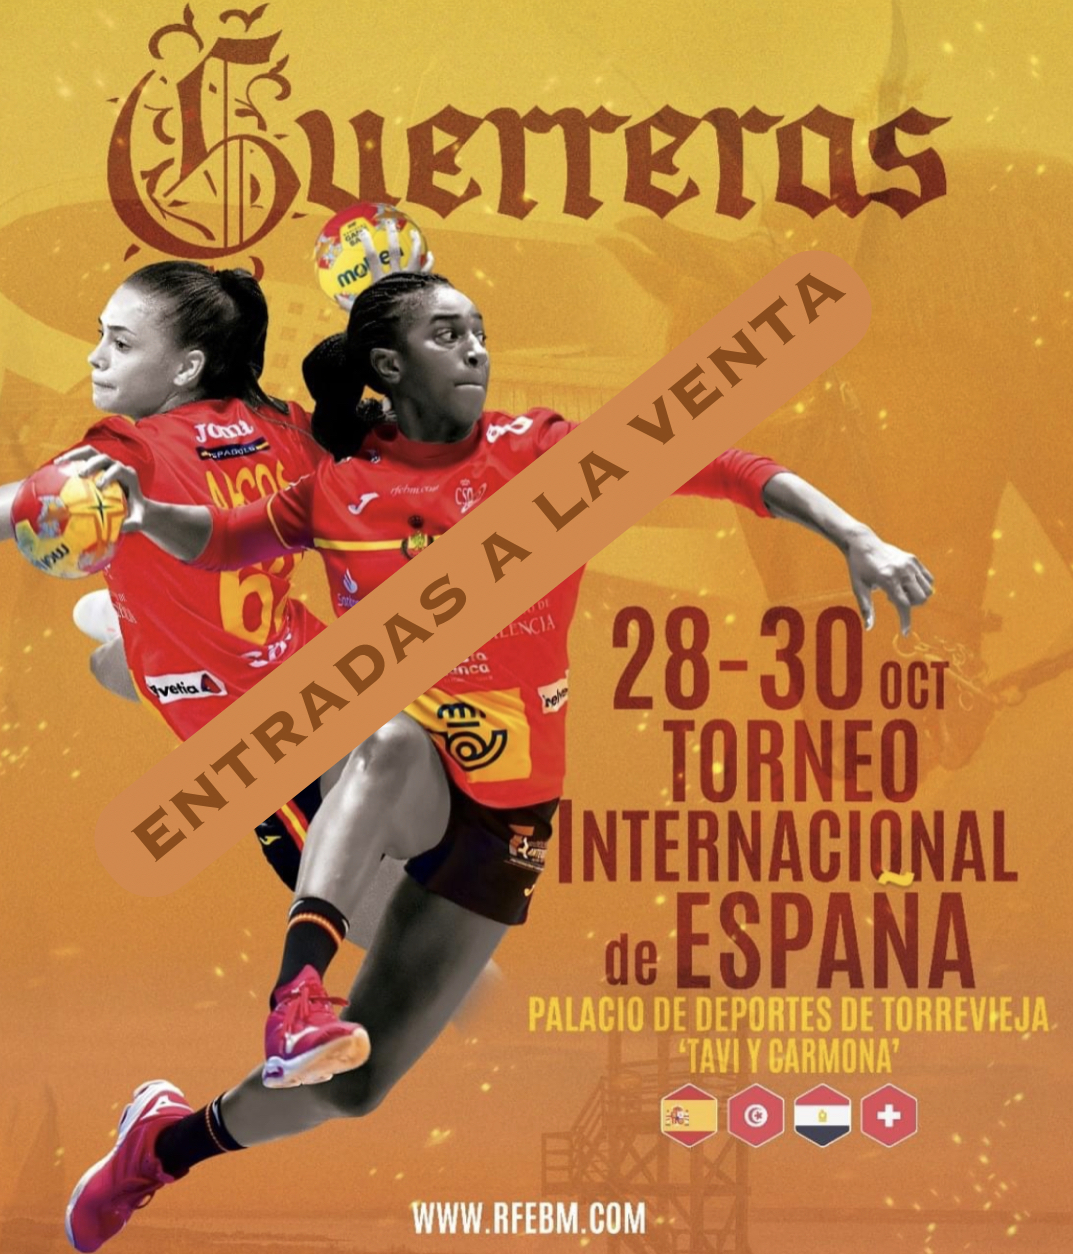 🎟Entradas a la venta a partir de hoy a las 13:00h, para el Torneo Internacional de España